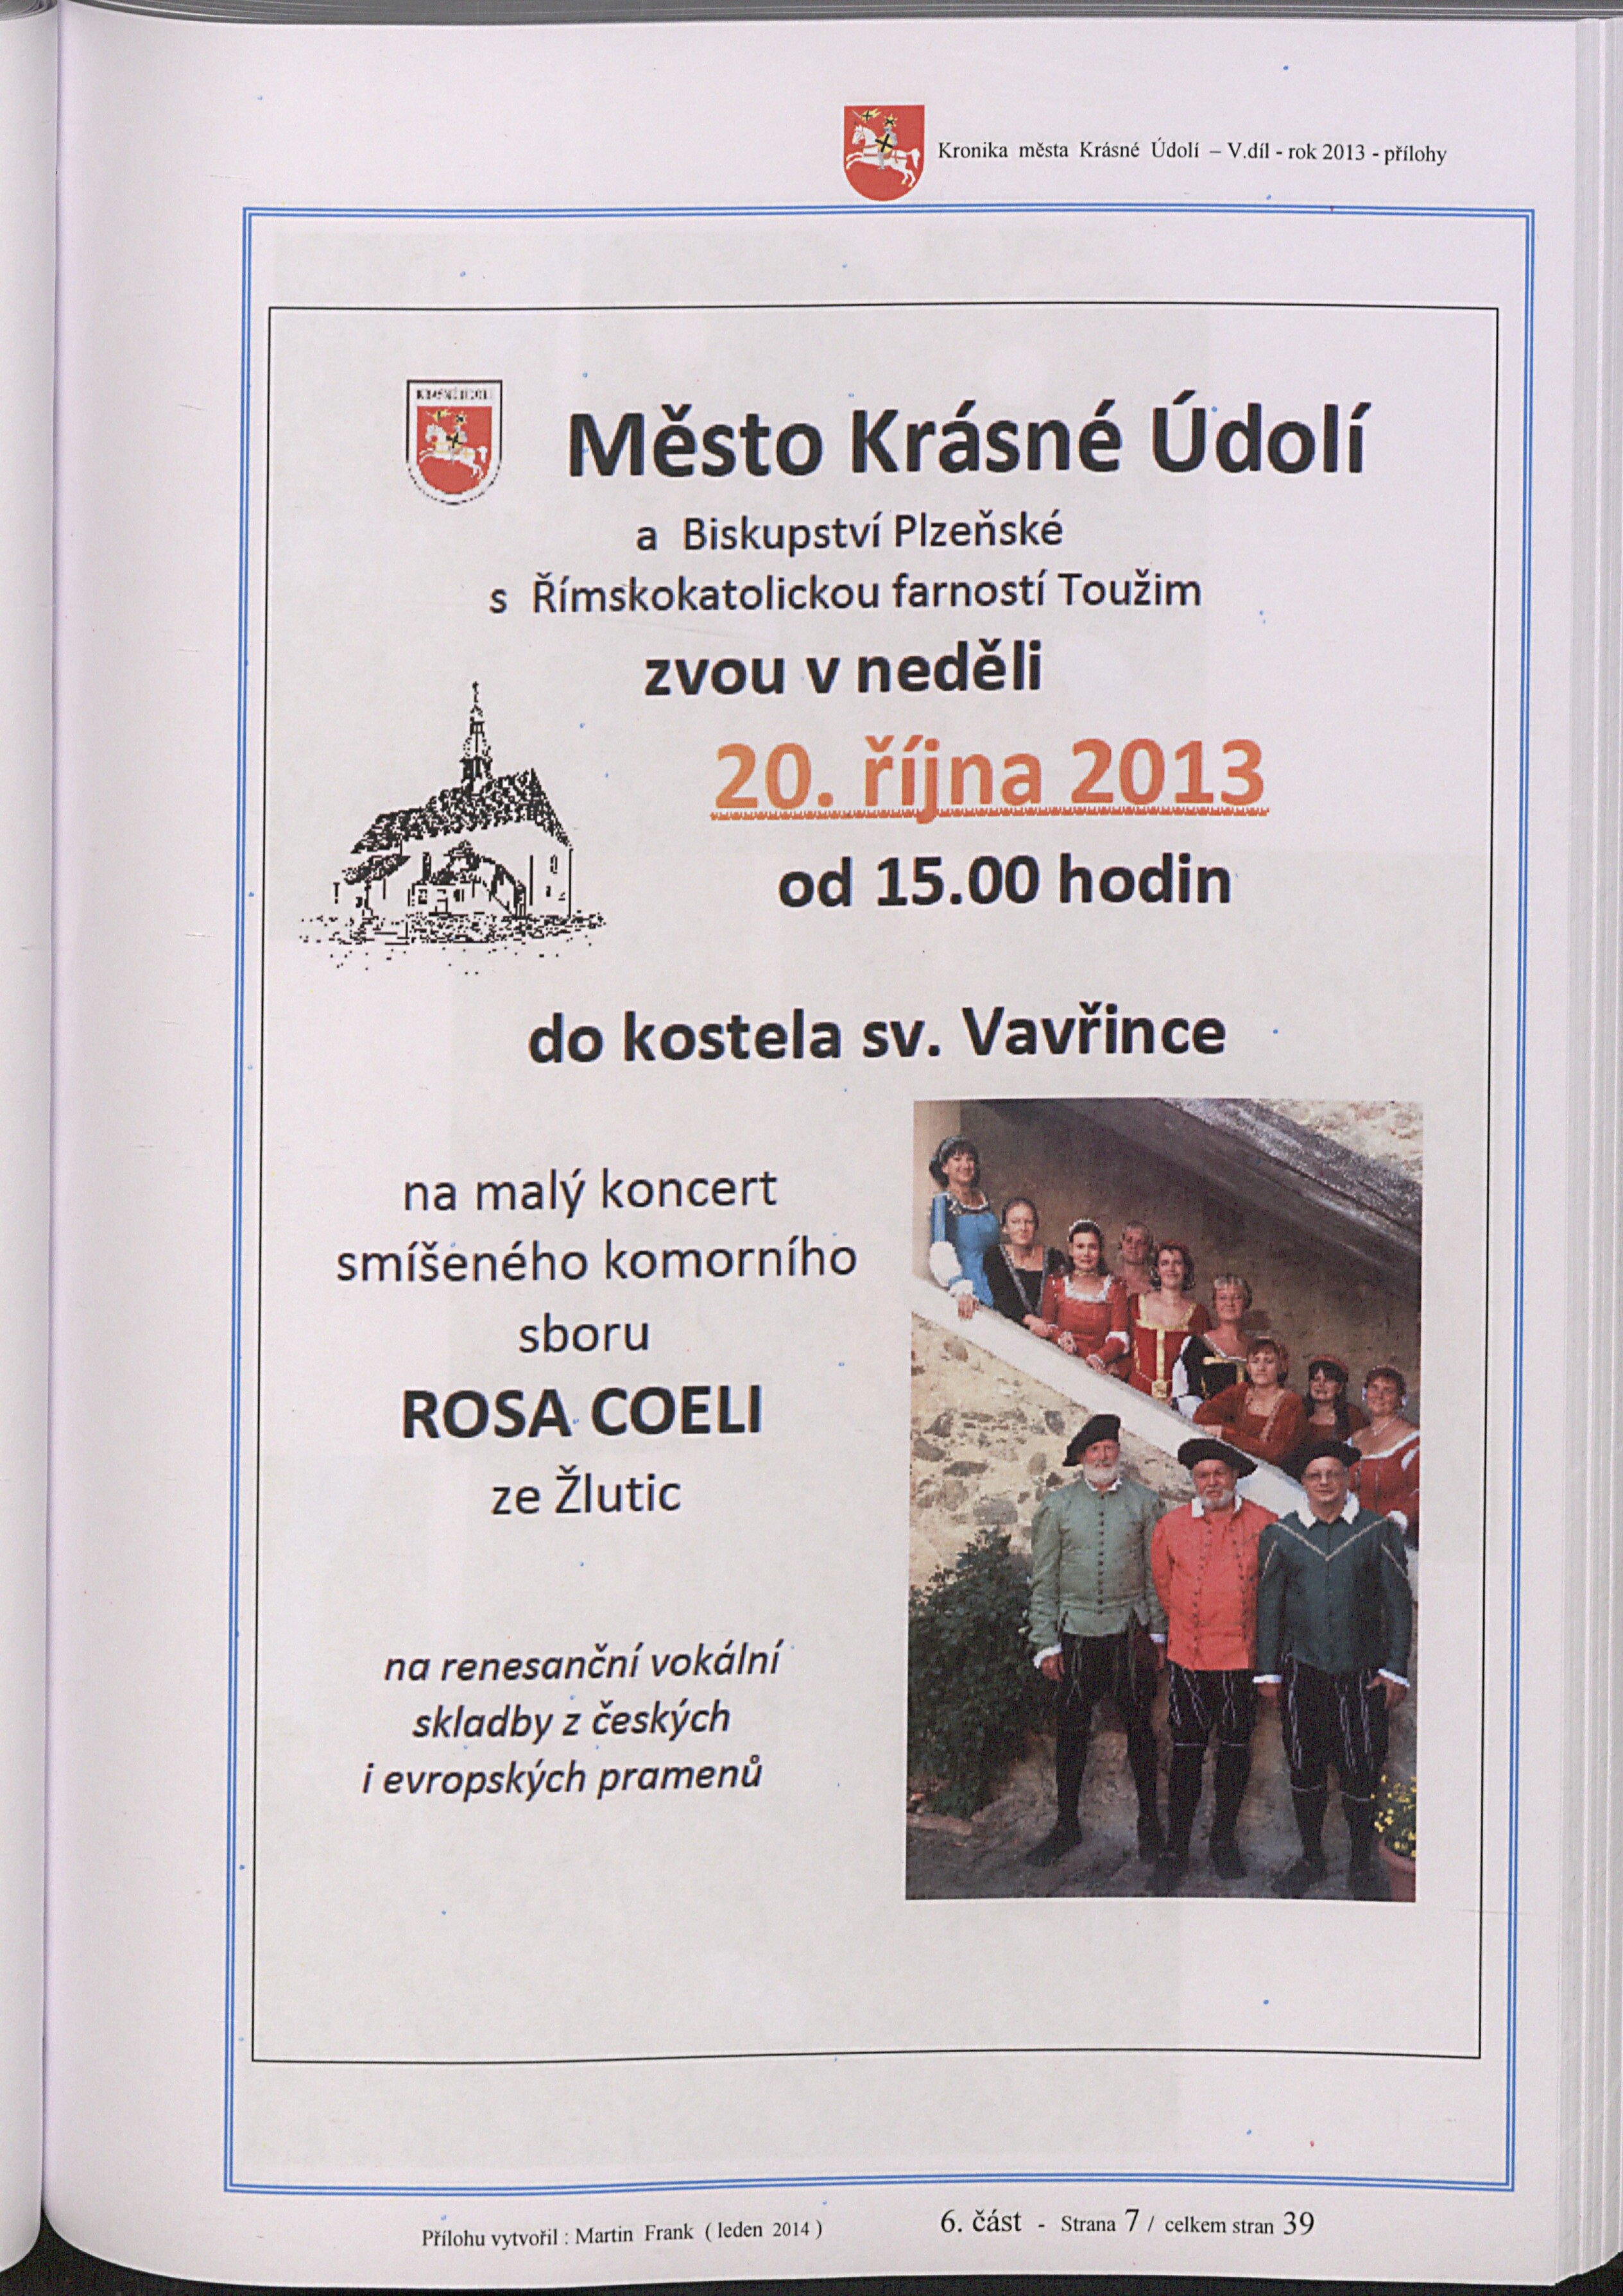 189. soap-kv_01831_mesto-krasne-udoli-2013_1900